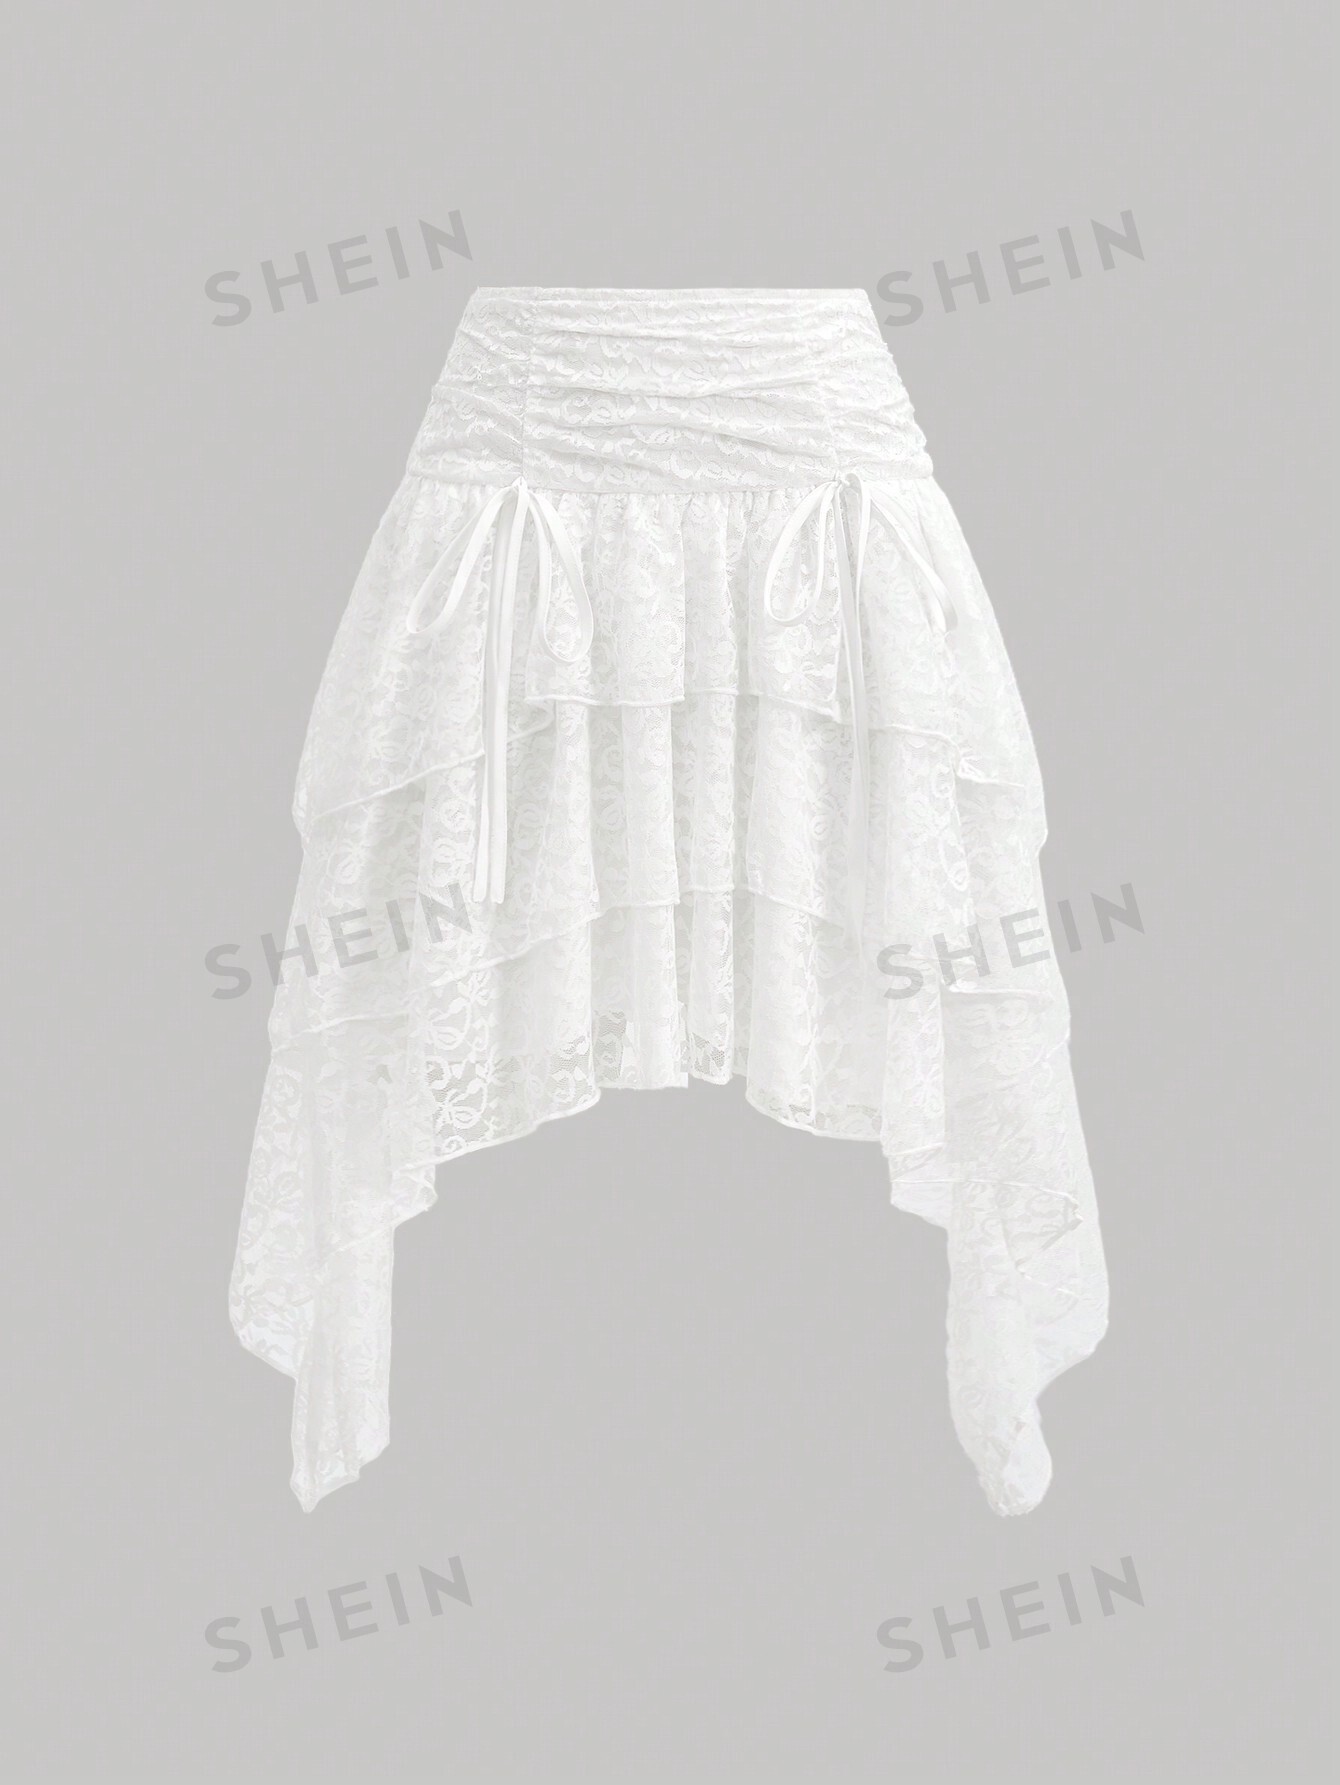 SHEIN MOD Белая кружевная декорированная асимметричная юбка с рюшами по подолу, белый shein mod белая кружевная декорированная асимметричная юбка с рюшами по подолу белый